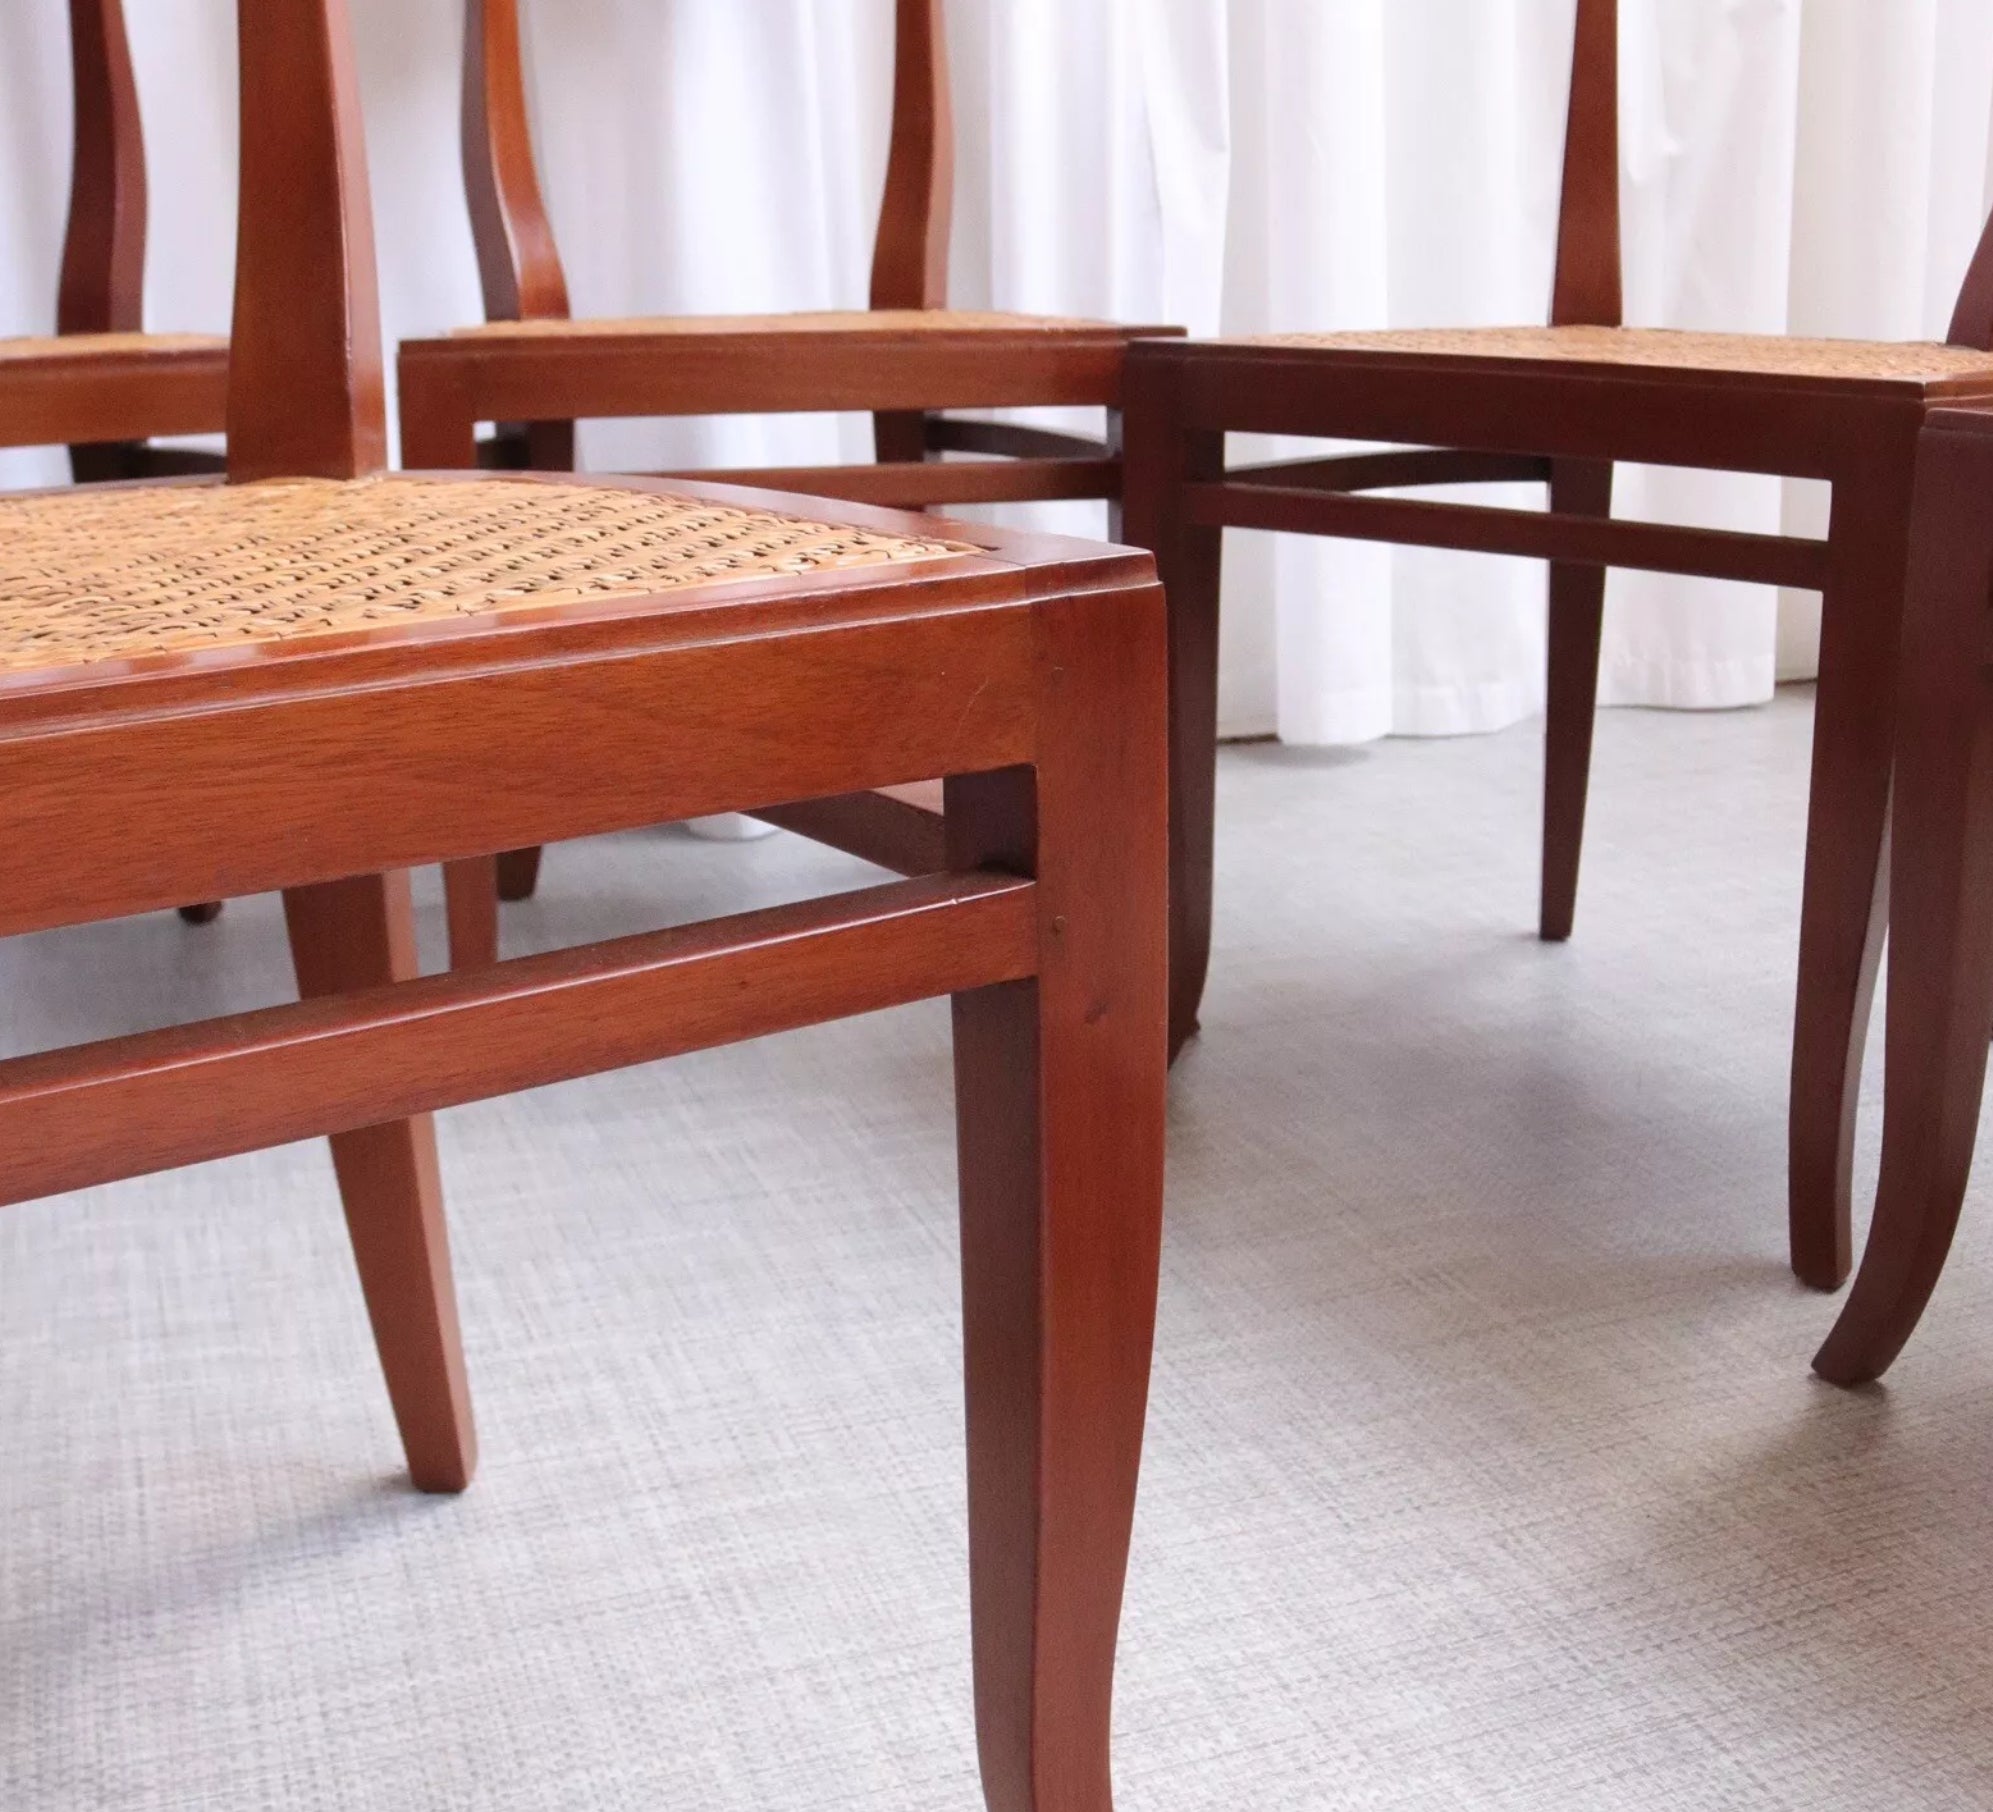 Set of 8 Unusual Biedermeier Dining Chairs High Back Cherry Rattan Mid Century - teakyfinders